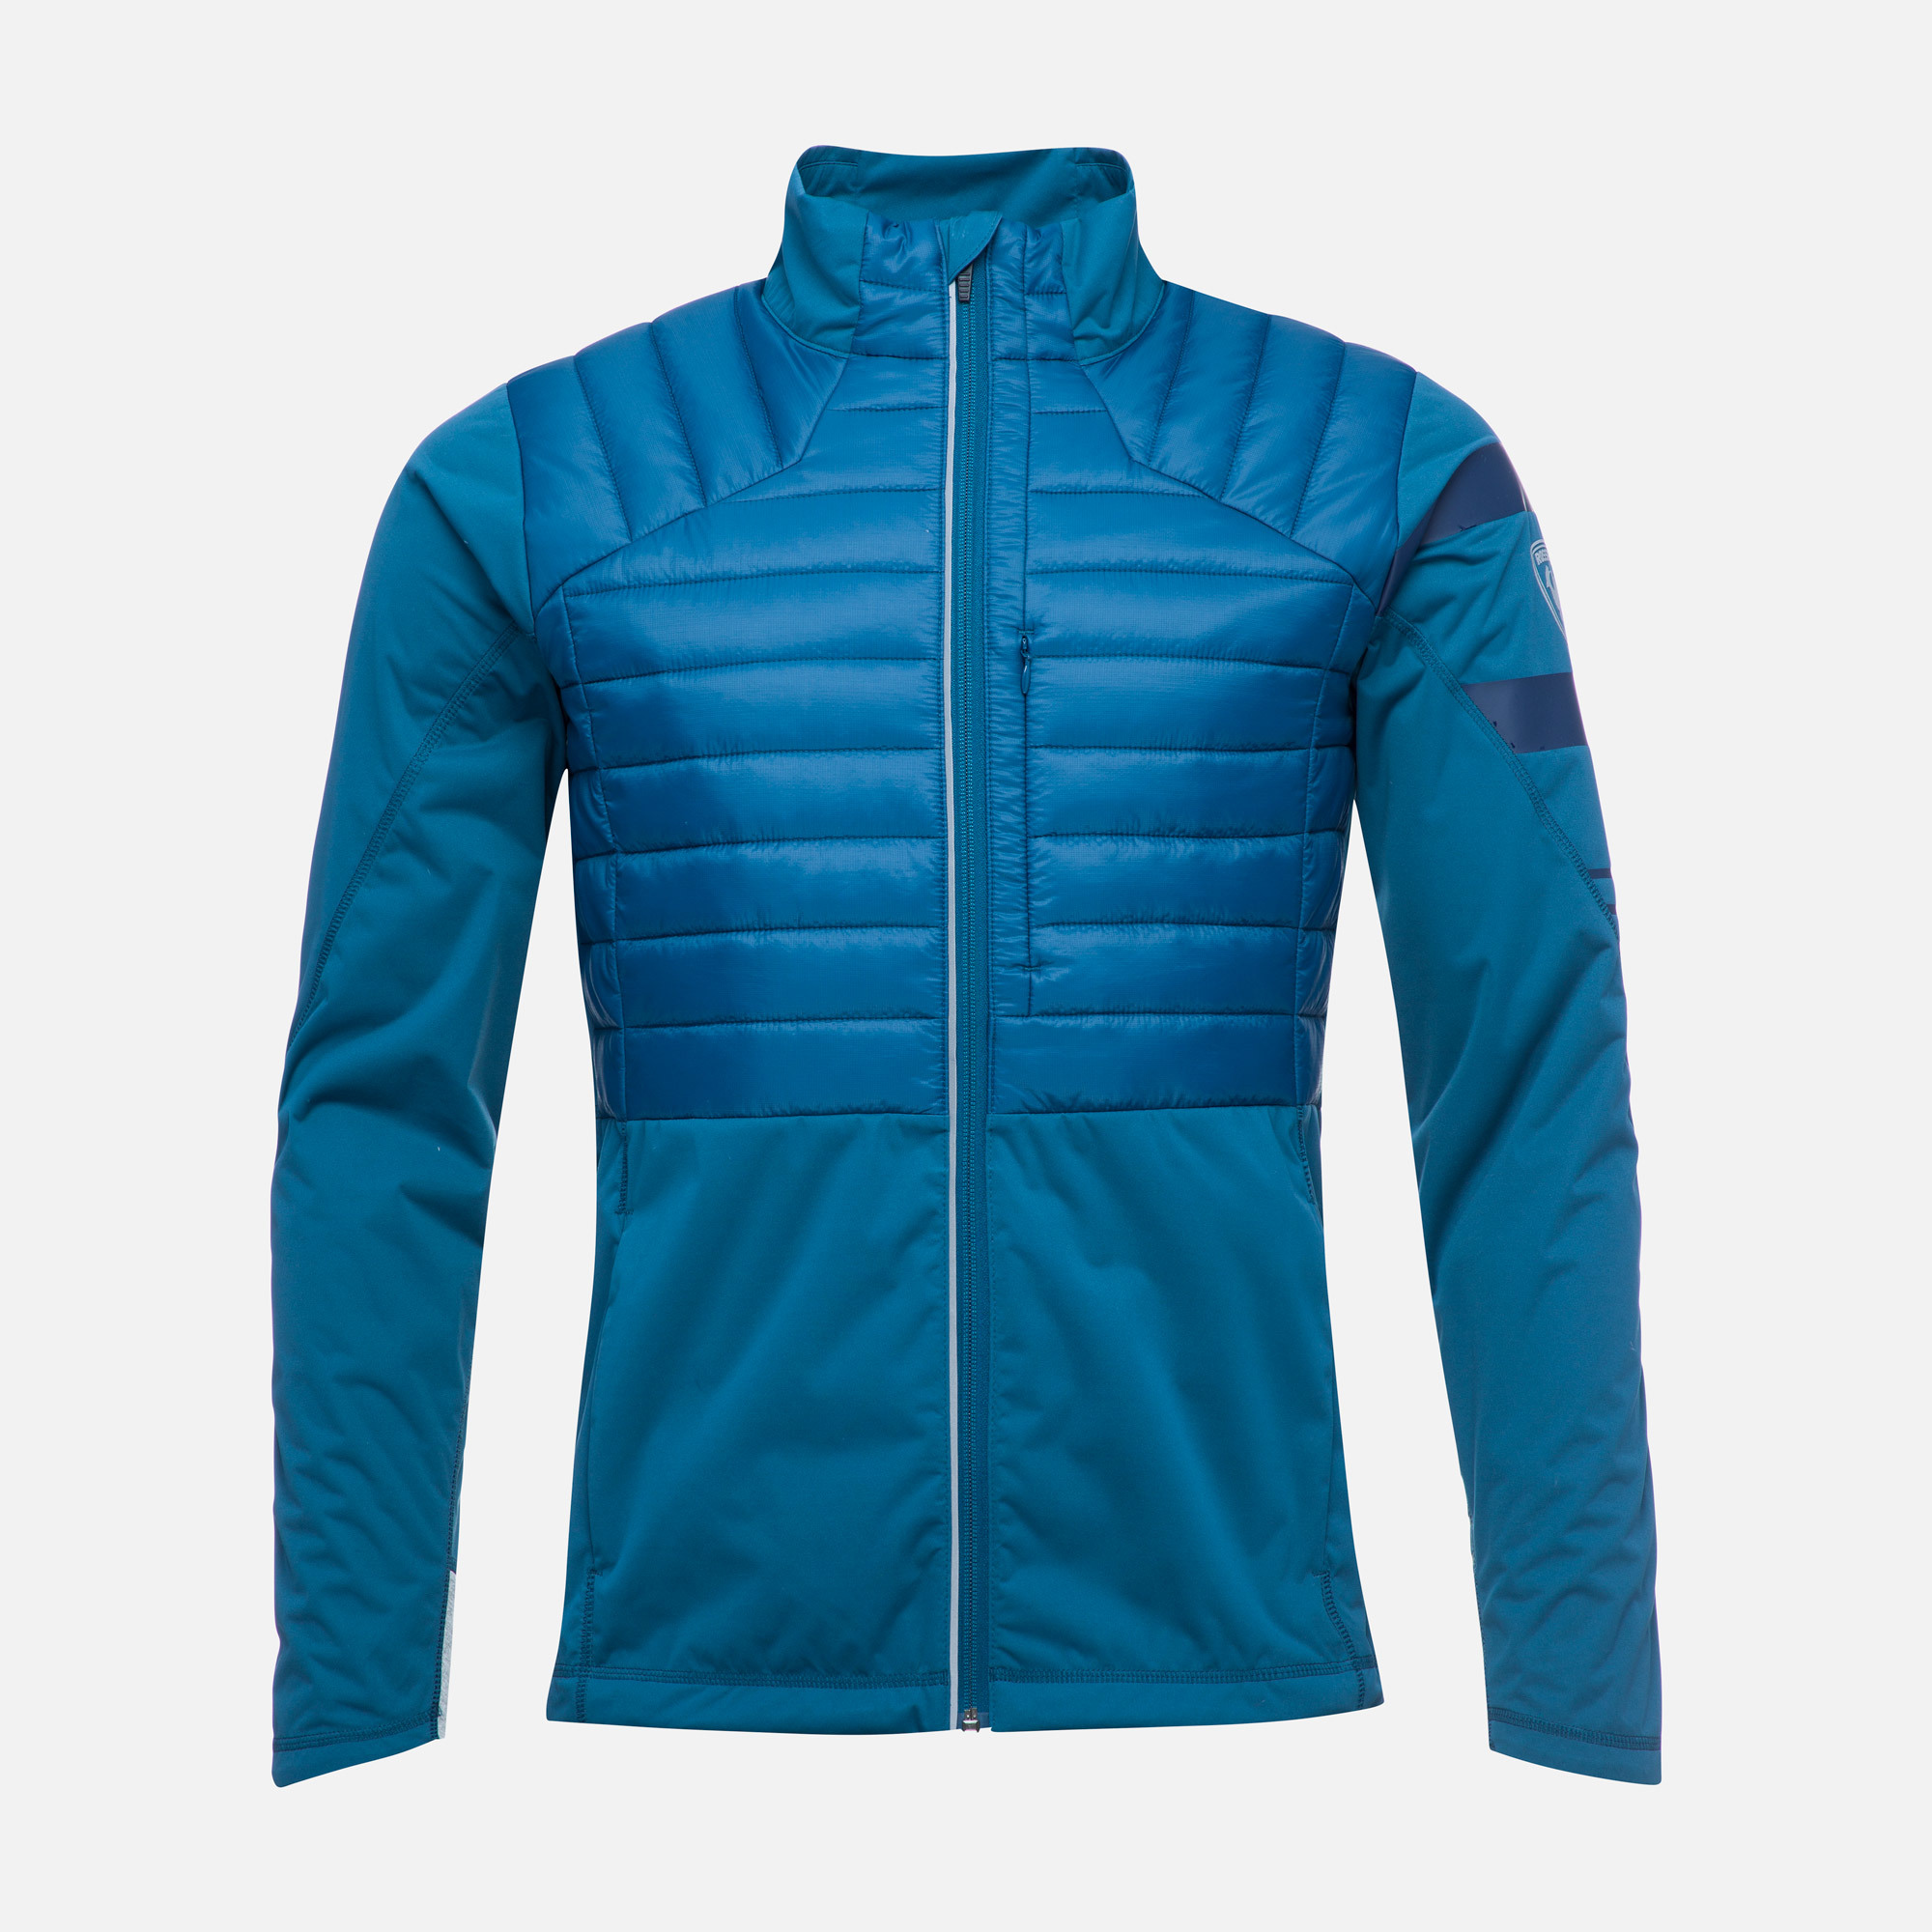 Men's Poursuite Warm nordic ski jacket